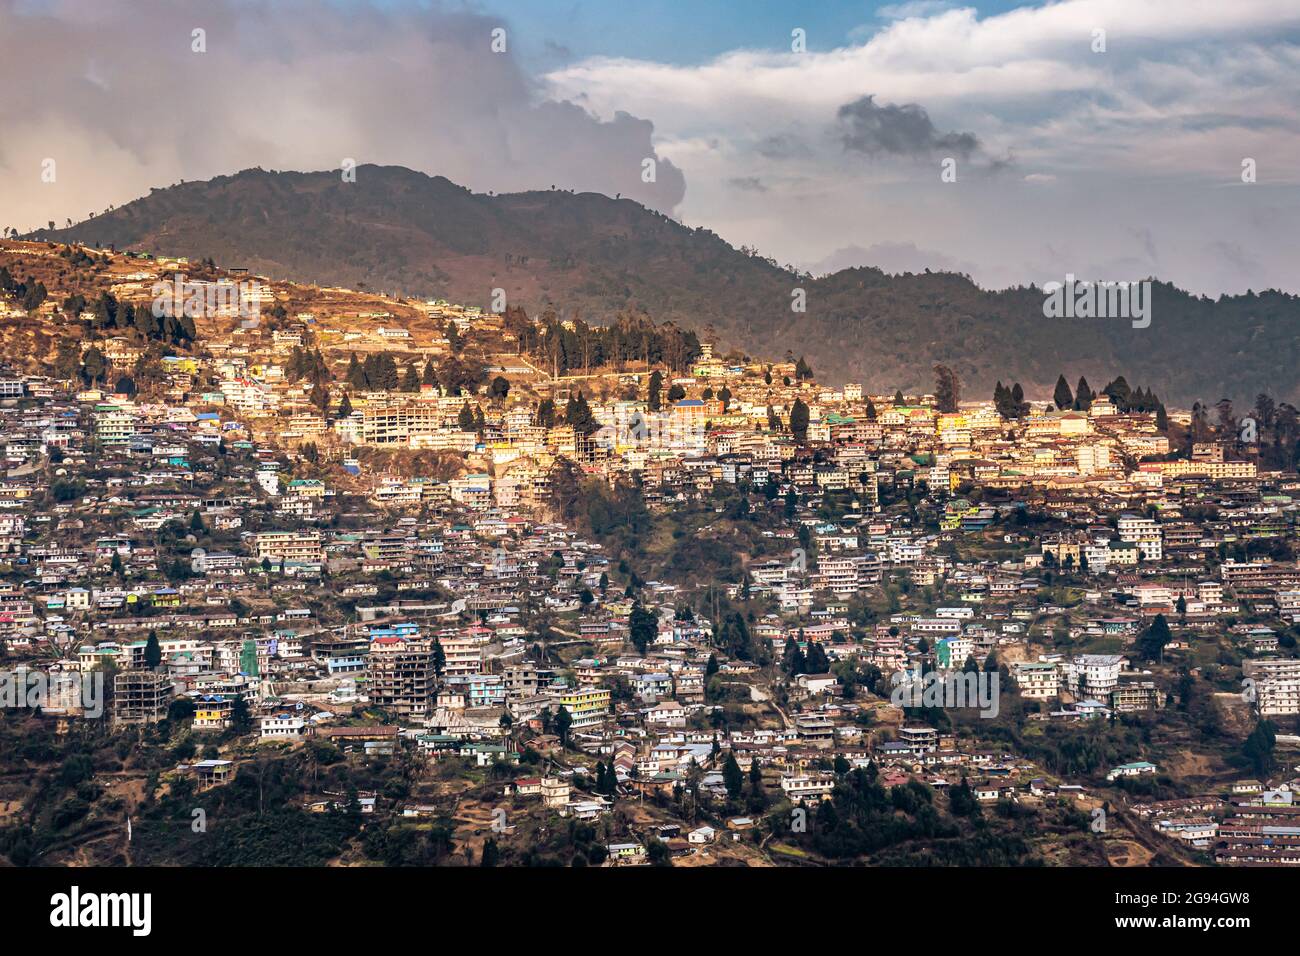 Blick auf die Urbanisierung der Stadt von einem Hügel aus mit einer riesigen Konstruktion und einem dramatischen Himmelsbild wird bei der Bomdila arunachal pradesh india aufgenommen. Stockfoto